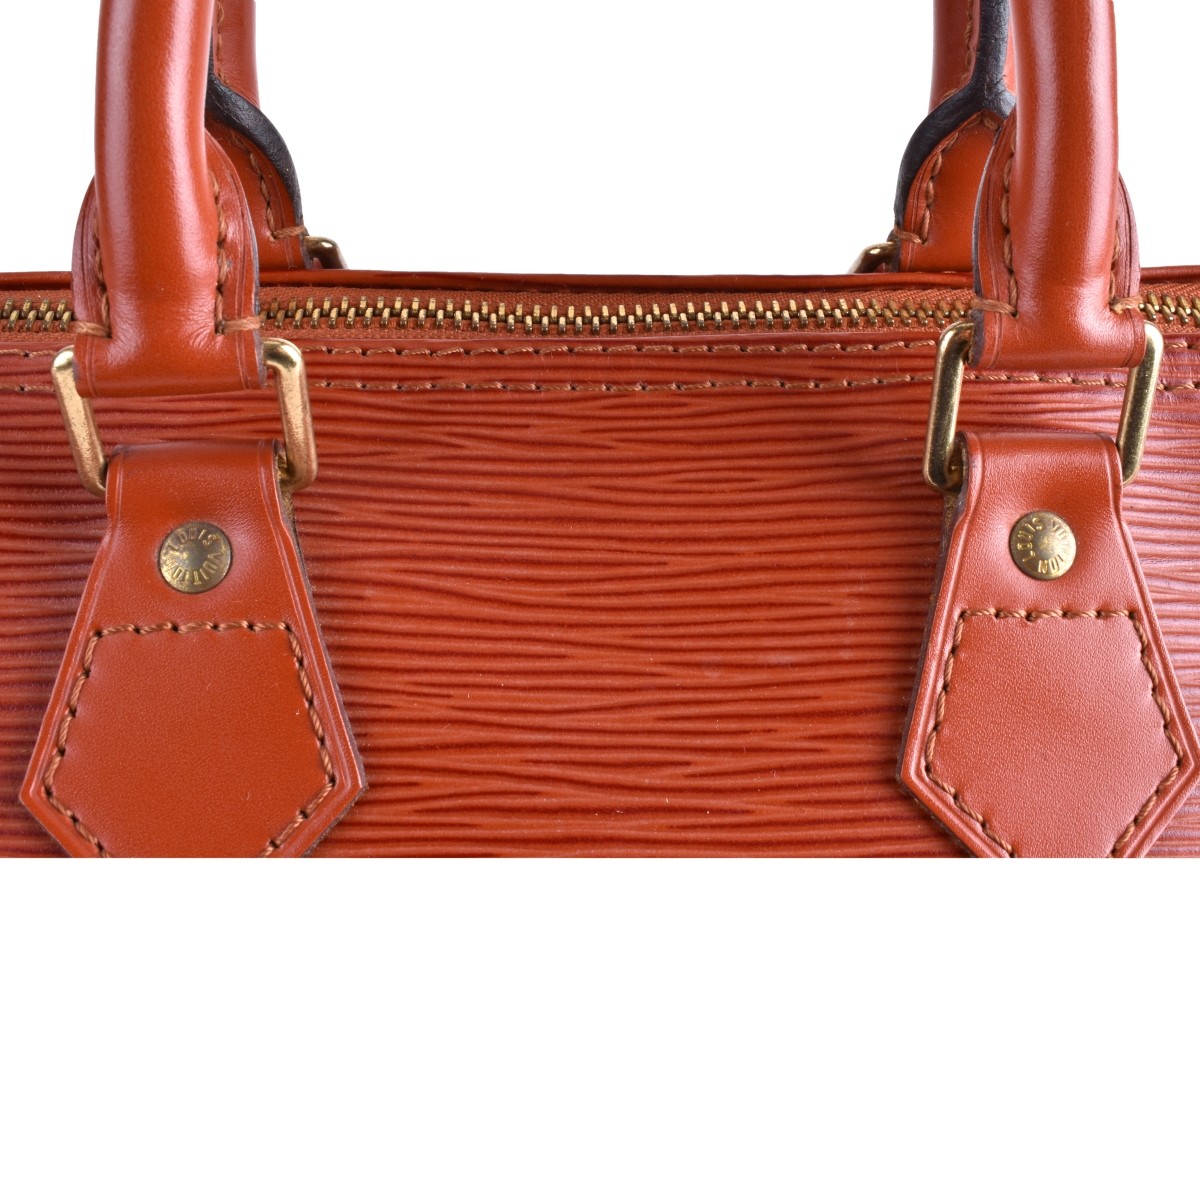 Louis Vuitton Tan Epi Leather Speedy 25 Bag